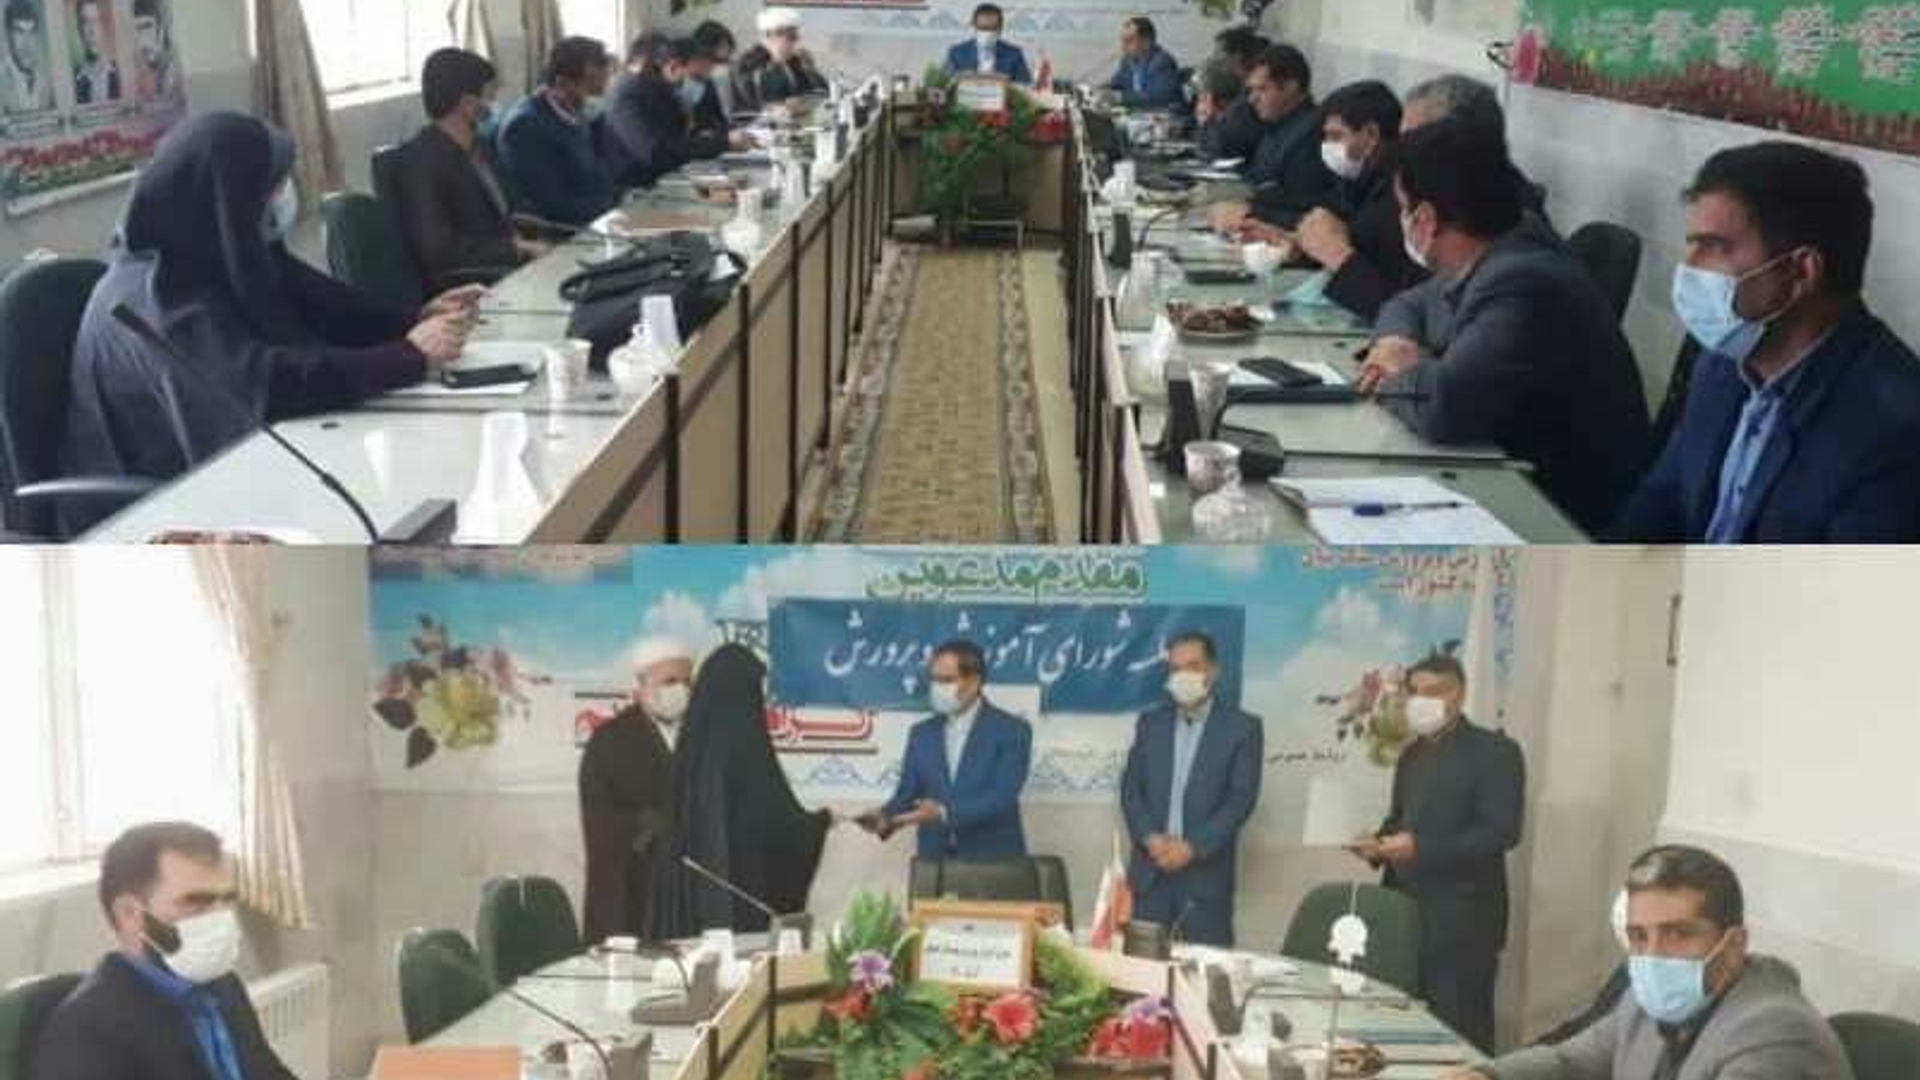 جلسه شورای آموزش و پرورش شهرستان کمیجان برگزار شد.